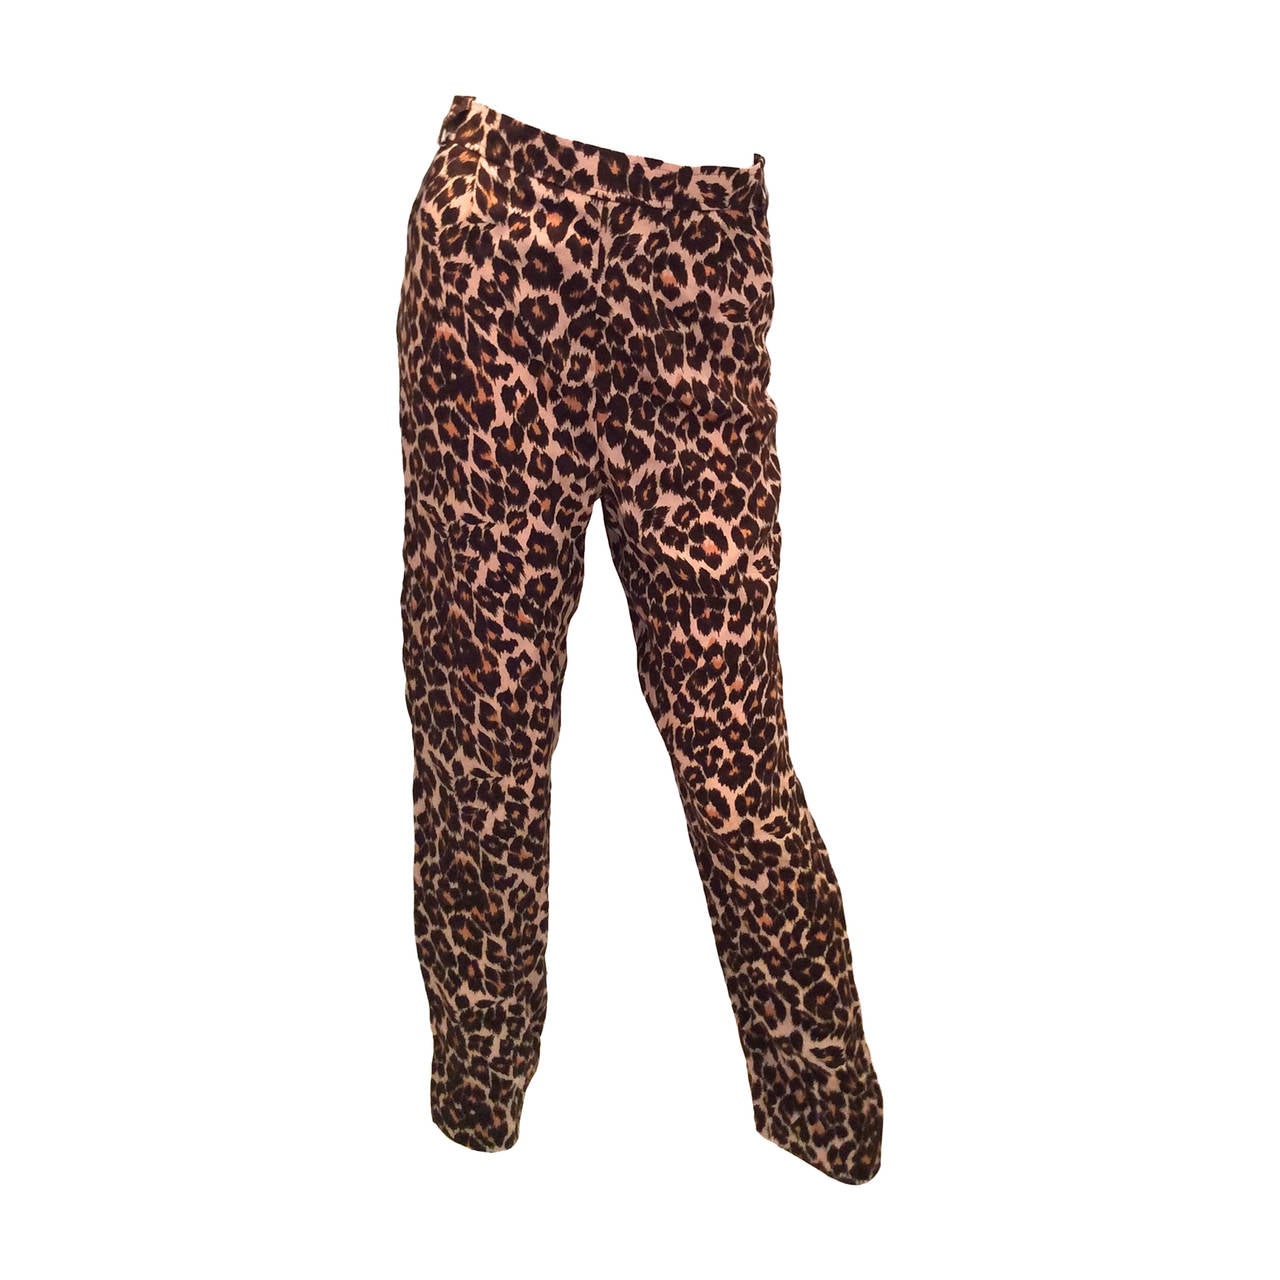 Yves Saint Laurent Rive Gauche Pants - Vintage Leopard Print Silk ...